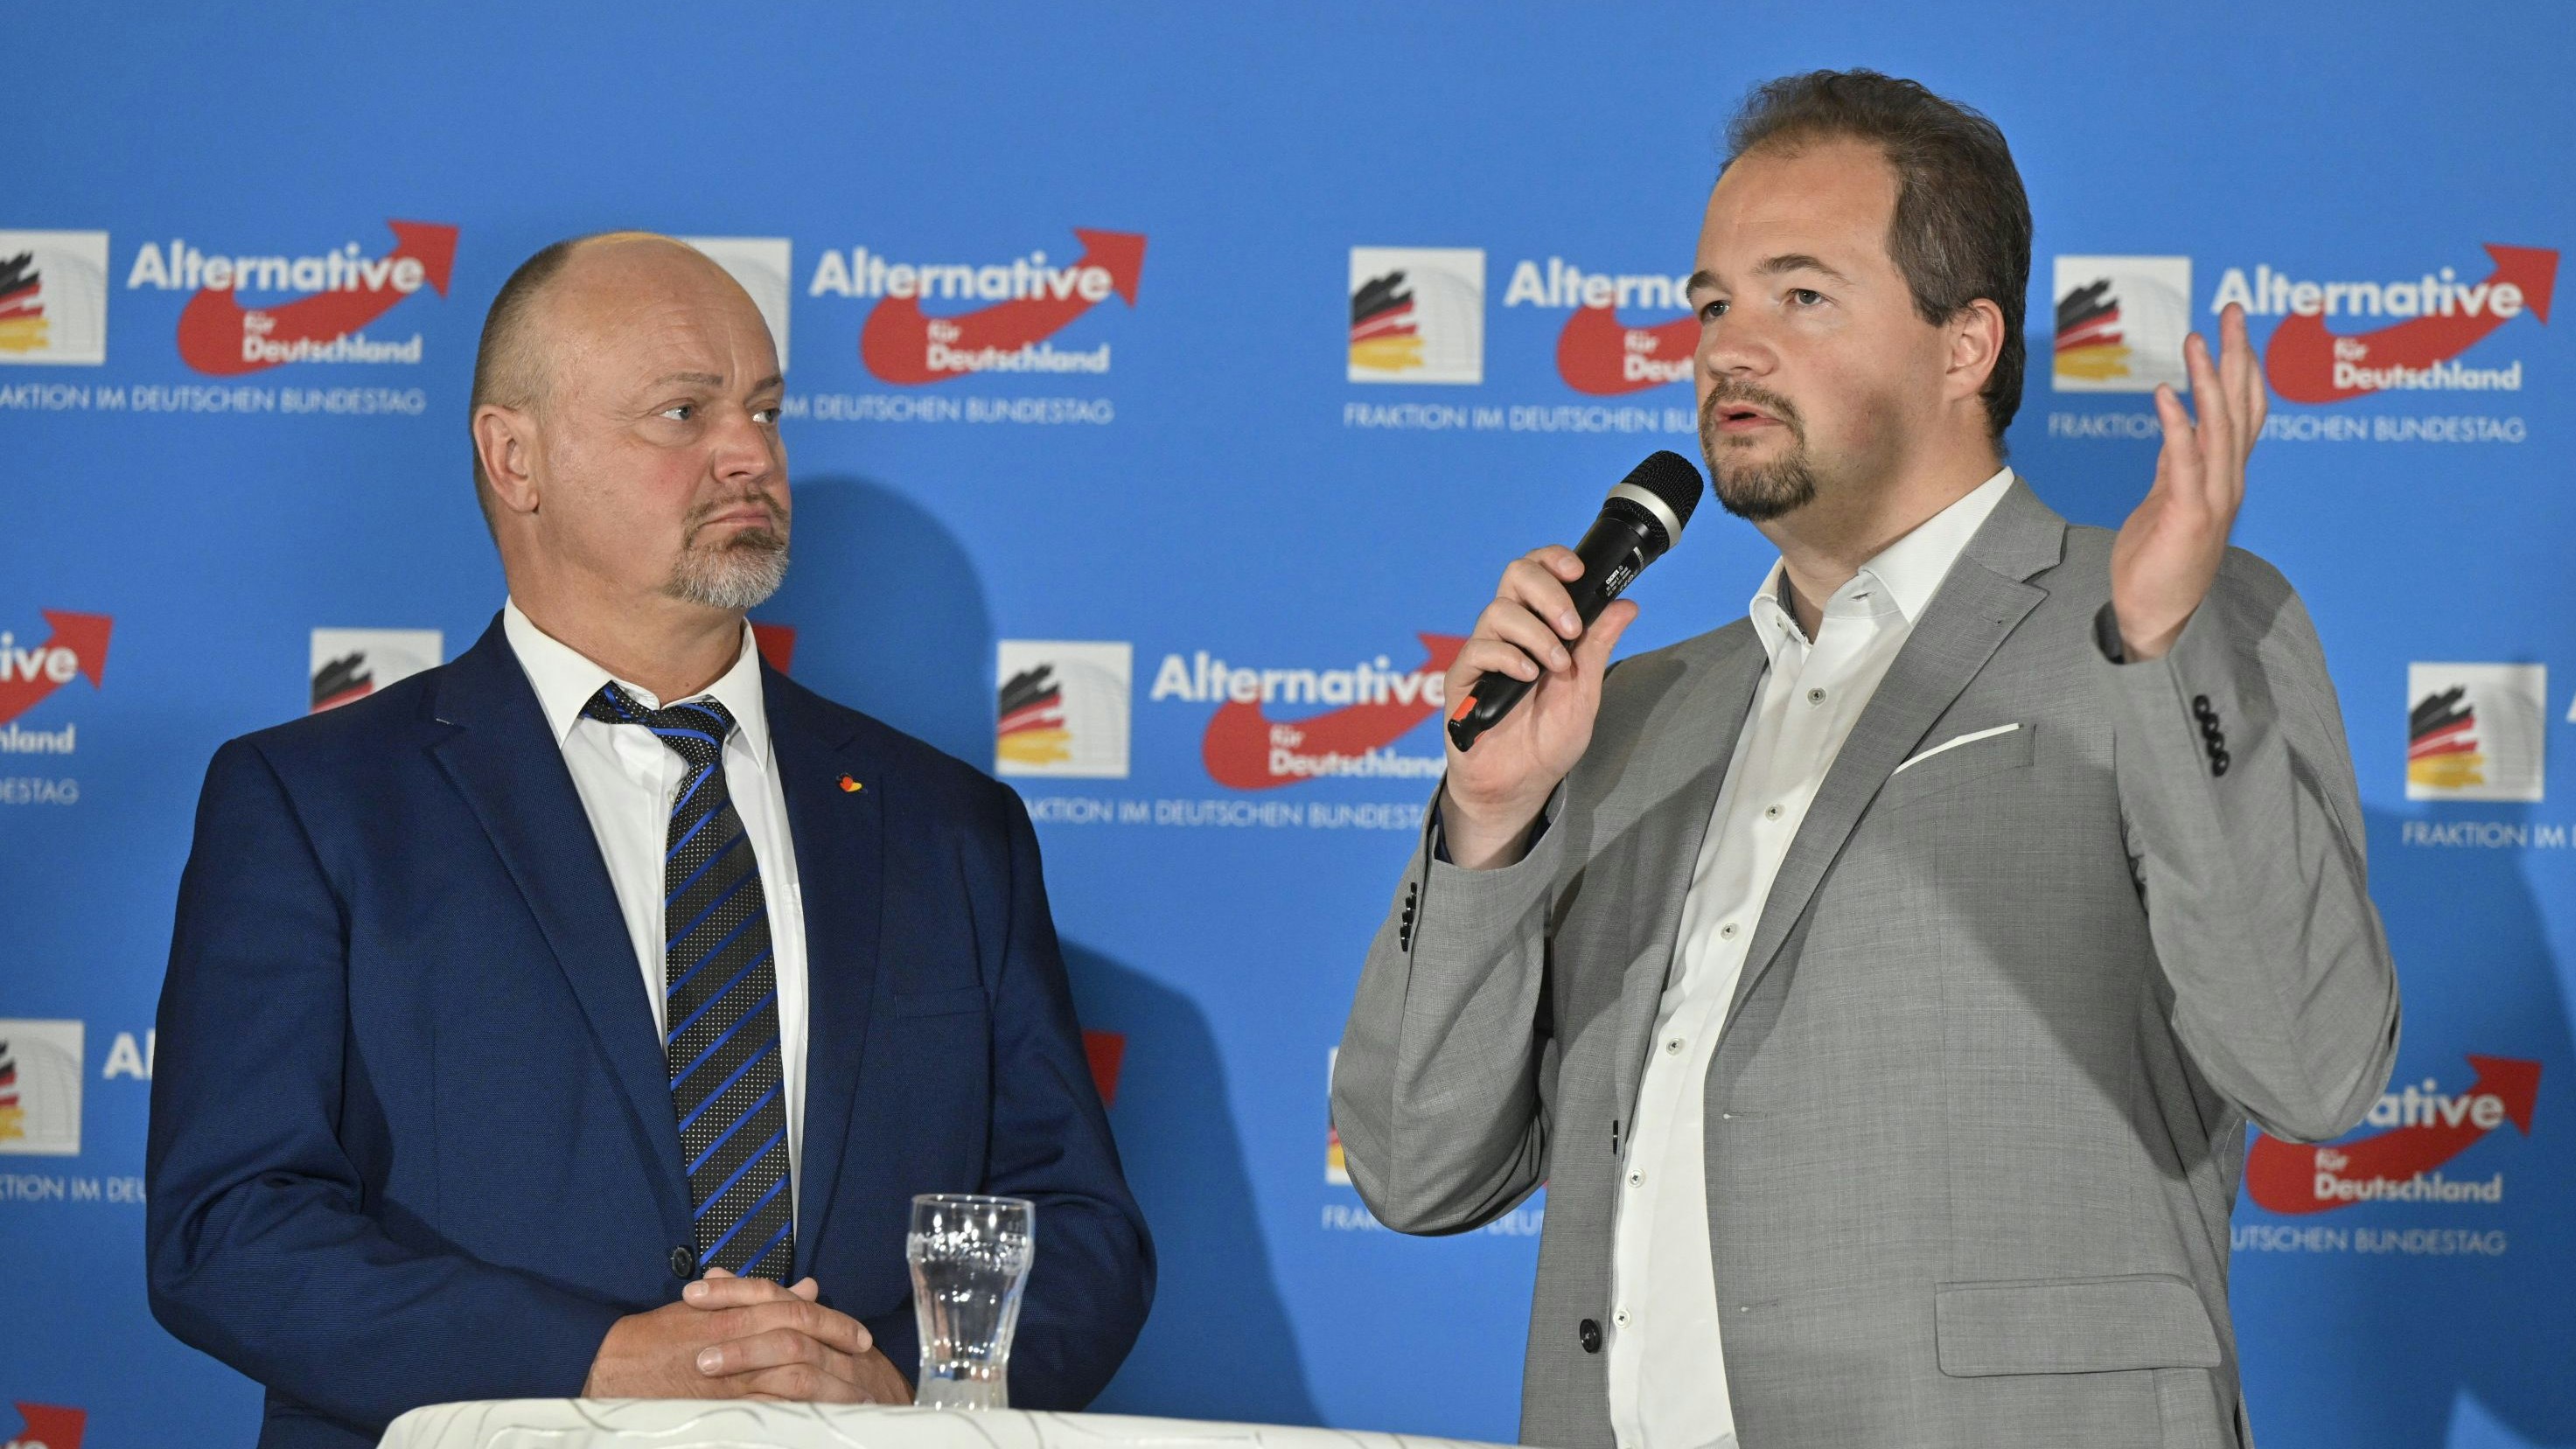 Die AfD-Bundestagsabgeordneten Dietmar Friedhoff (links) und Martin Sichert in Peheim. Foto: M. Niehues